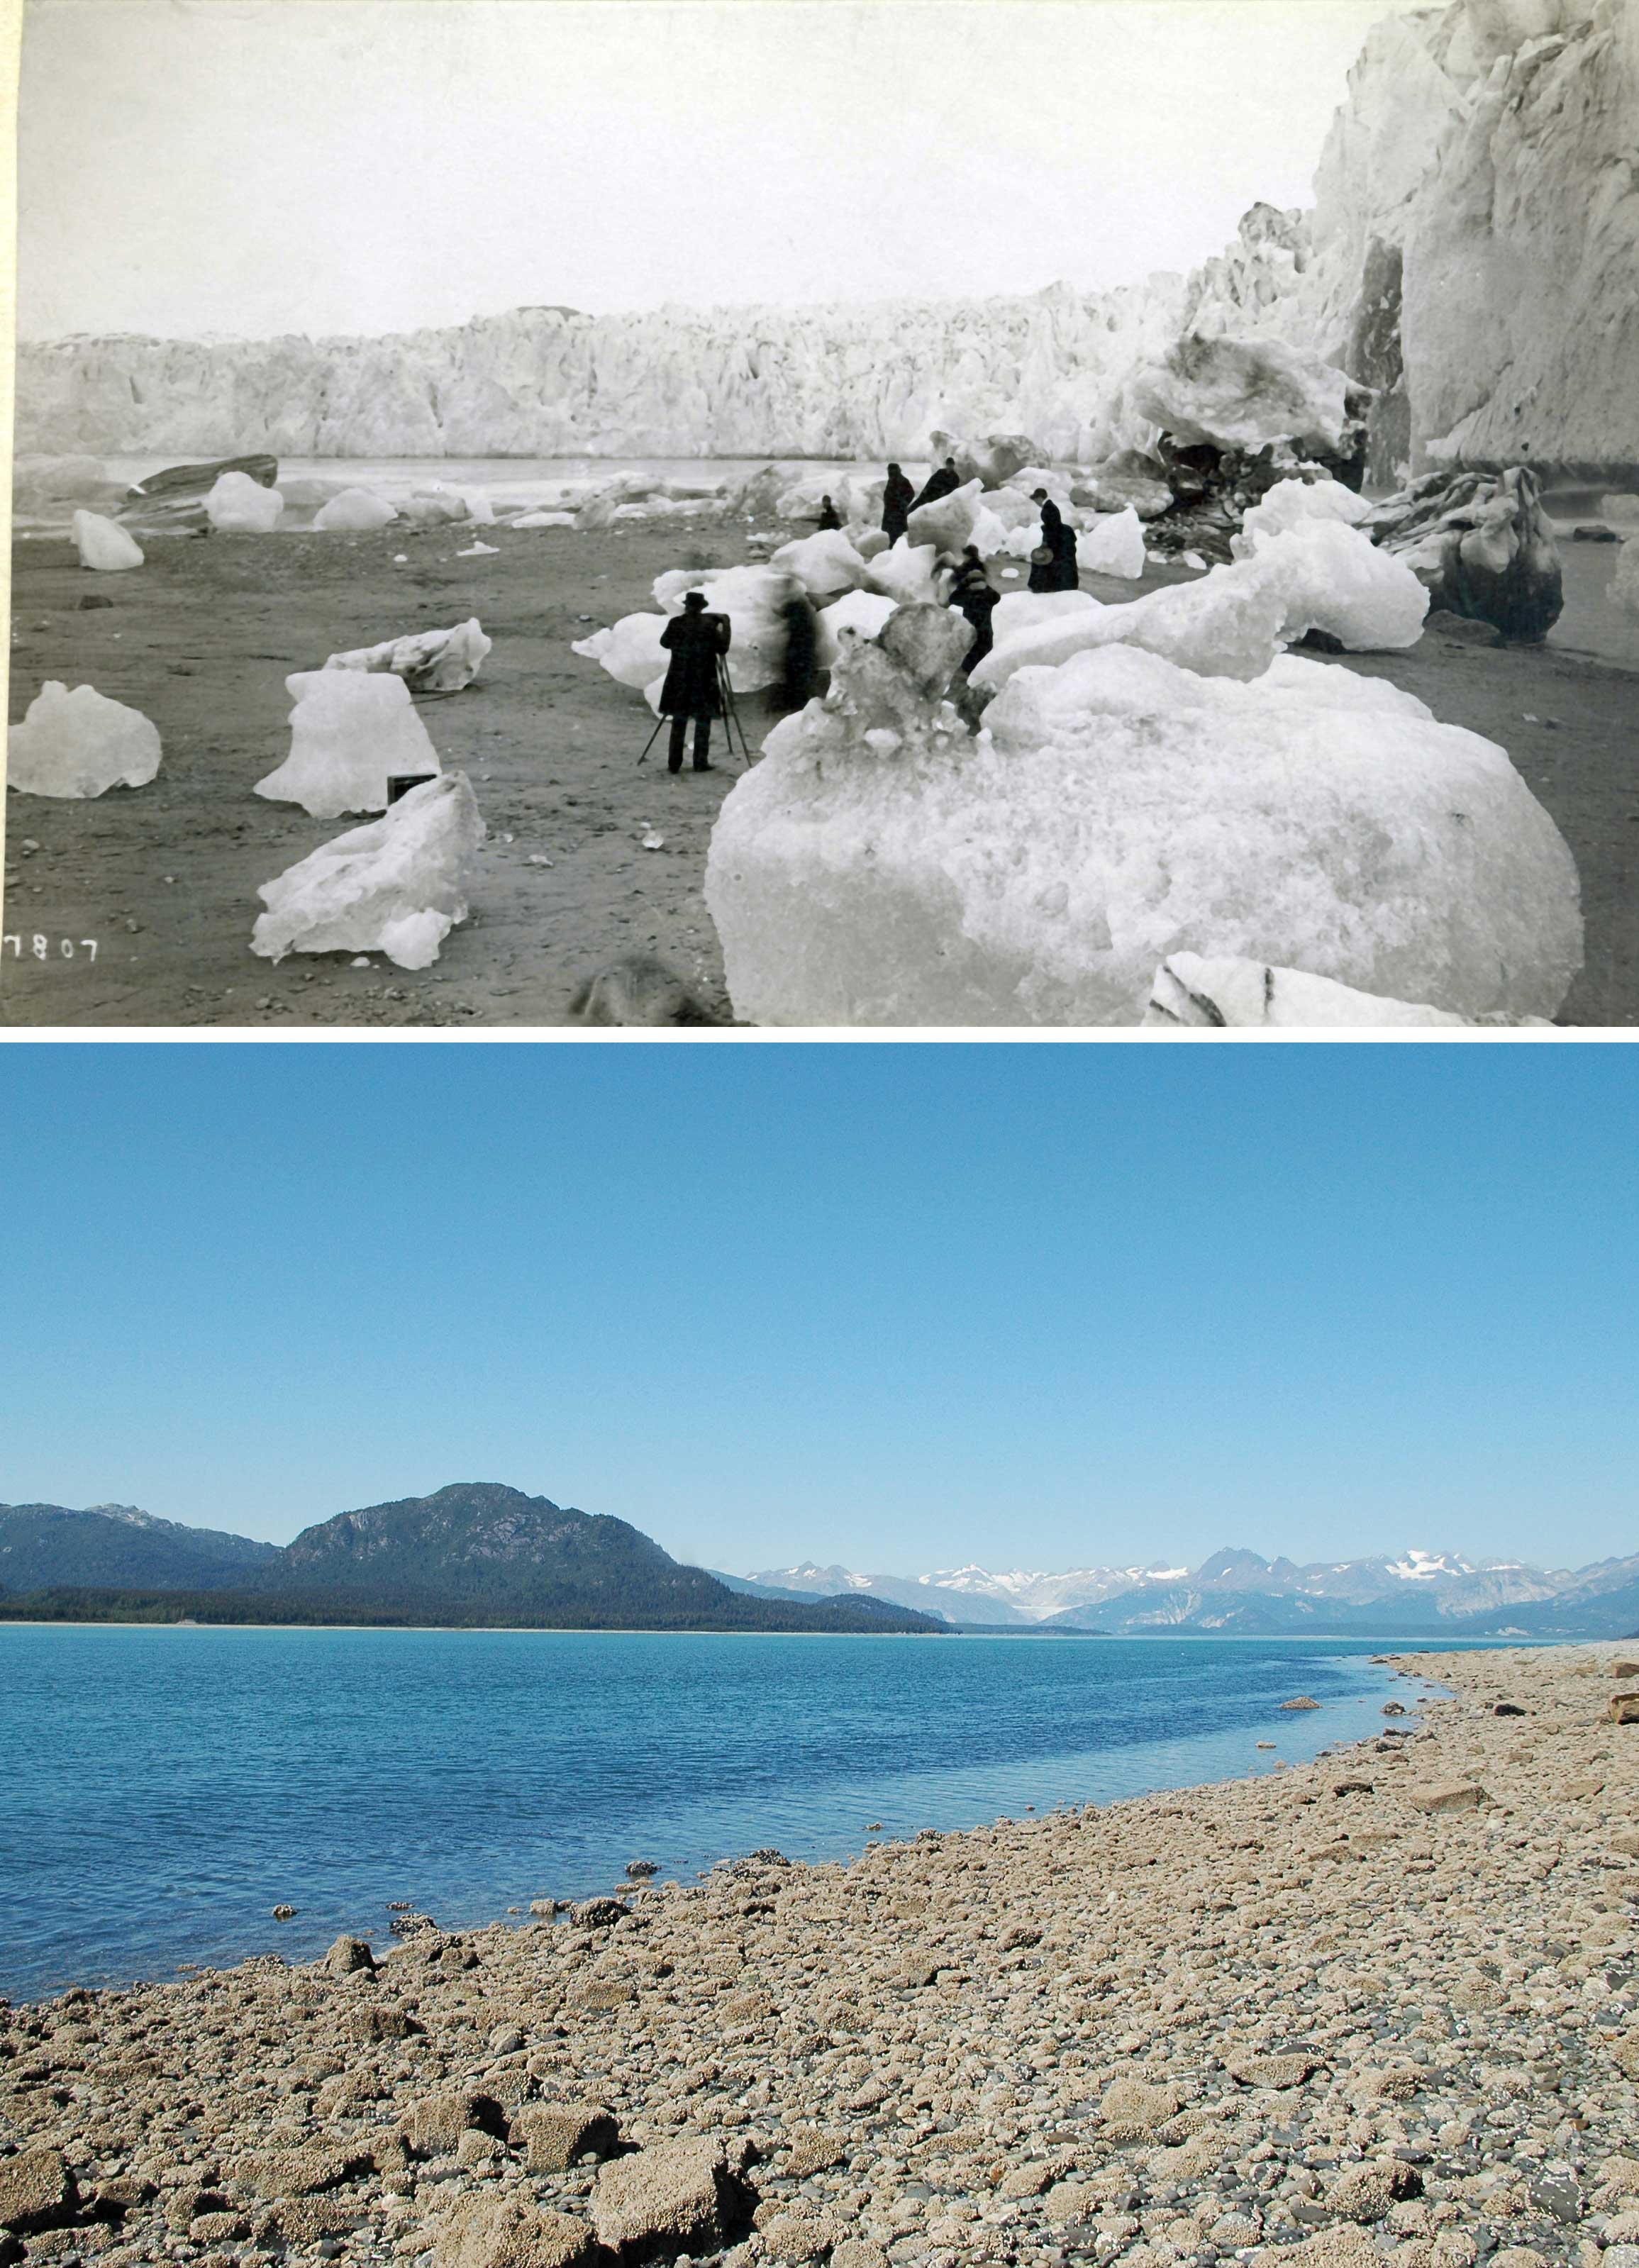 Le recul des glaciers en Alaska photographié au cours du siècle dernier